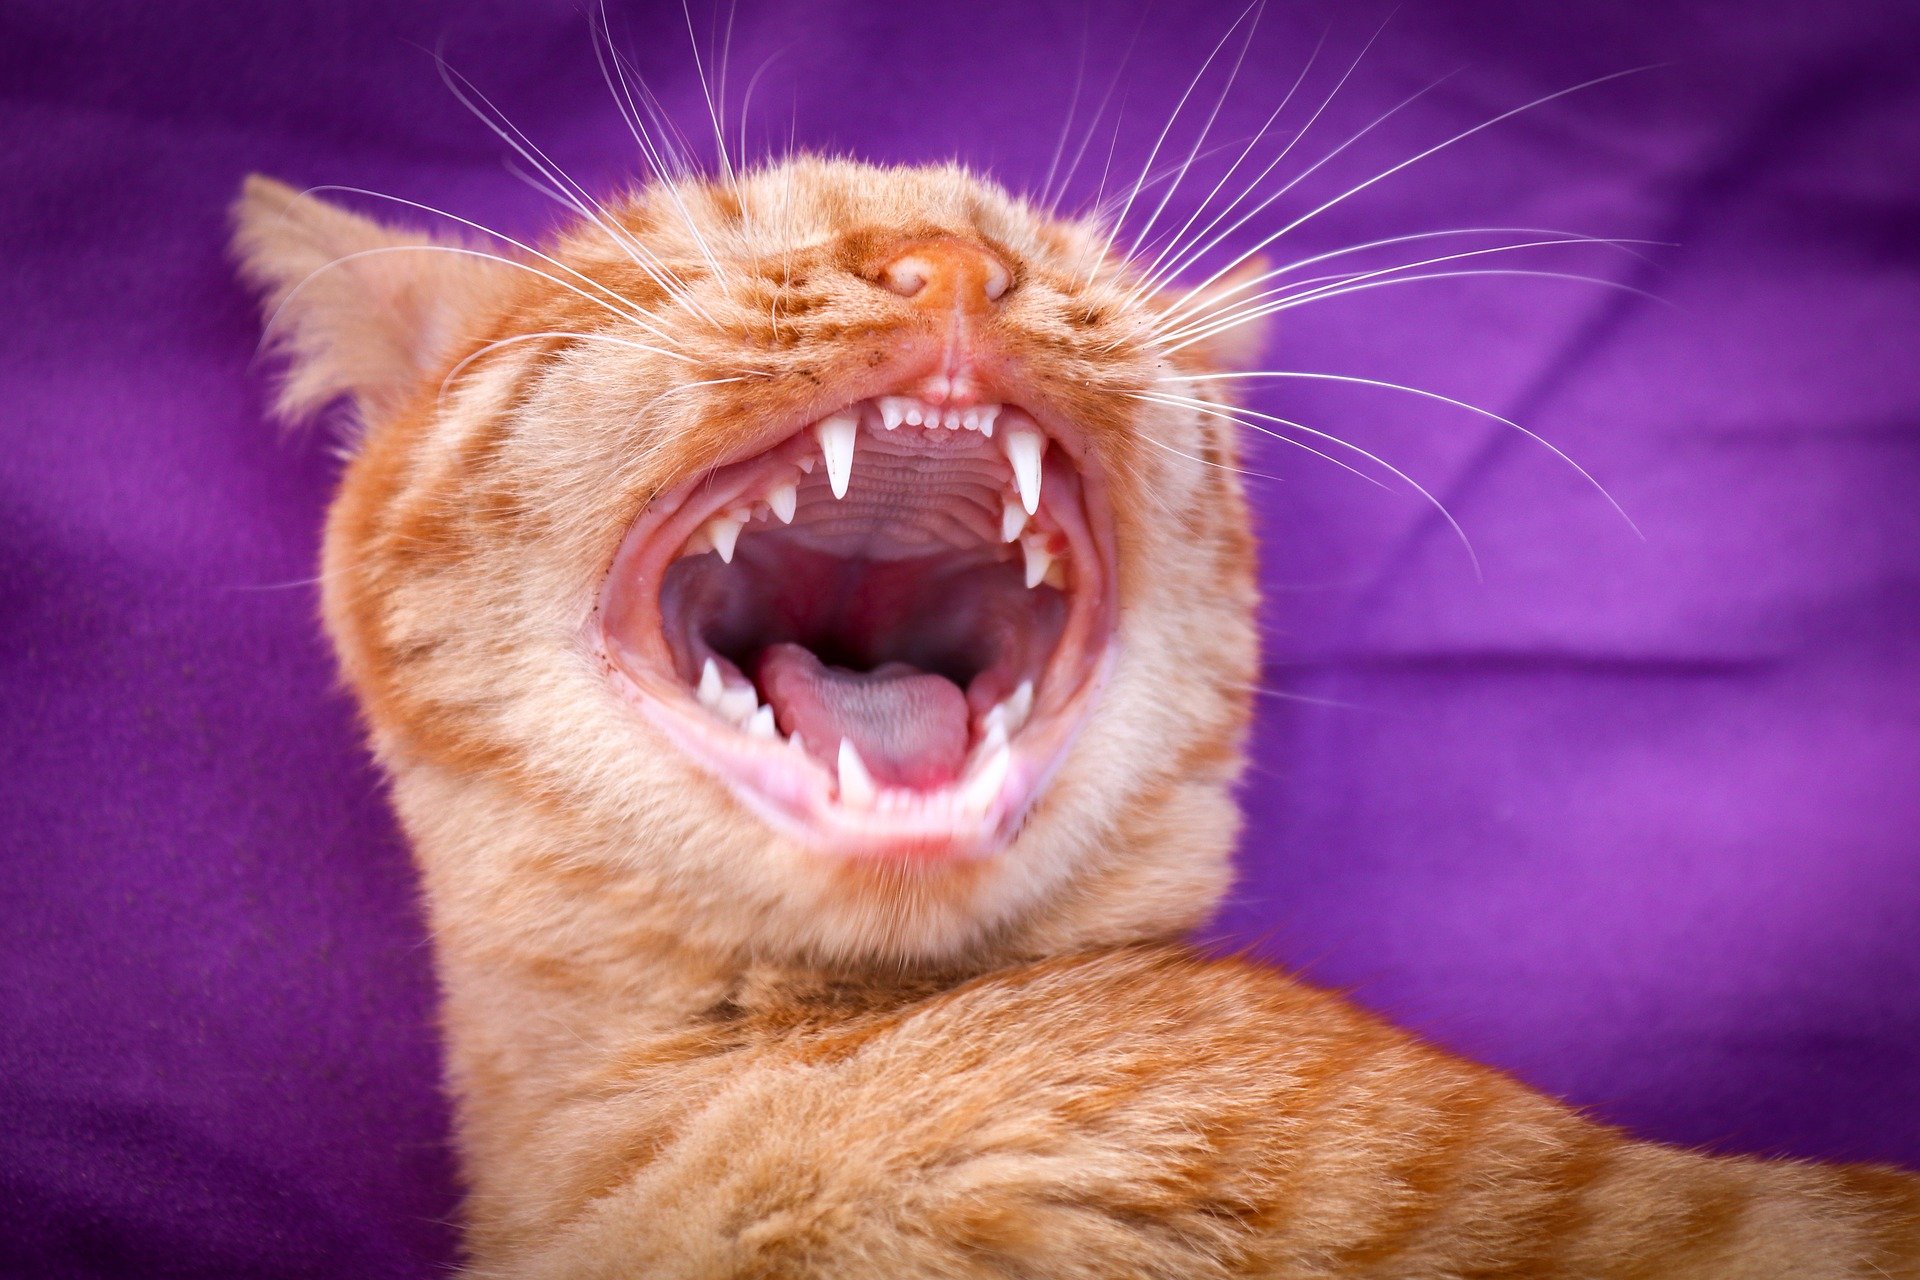 Zapalenie dziąseł u kotów początkowo może nie dawać widocznych objawów. W jego wczesnej fazie zwykle można zaobserwować u kota zaczerwienione dziąsła w miejscu ich przylegania do zębów. 